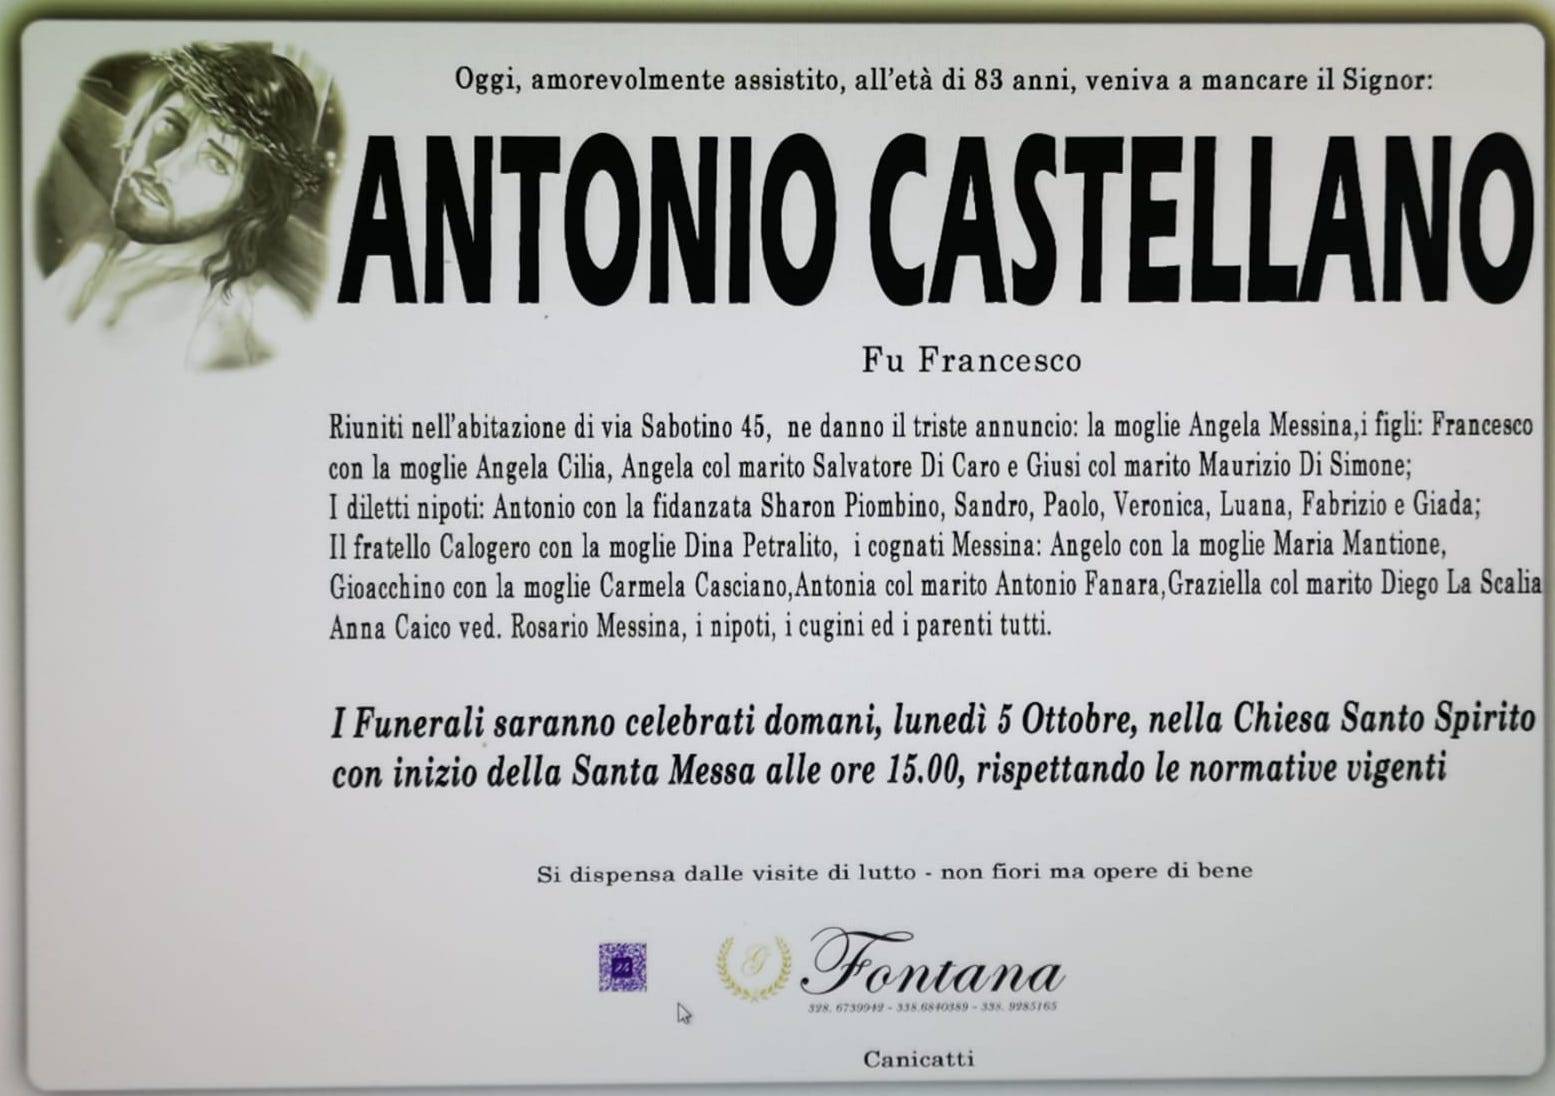 Antonio Castellano